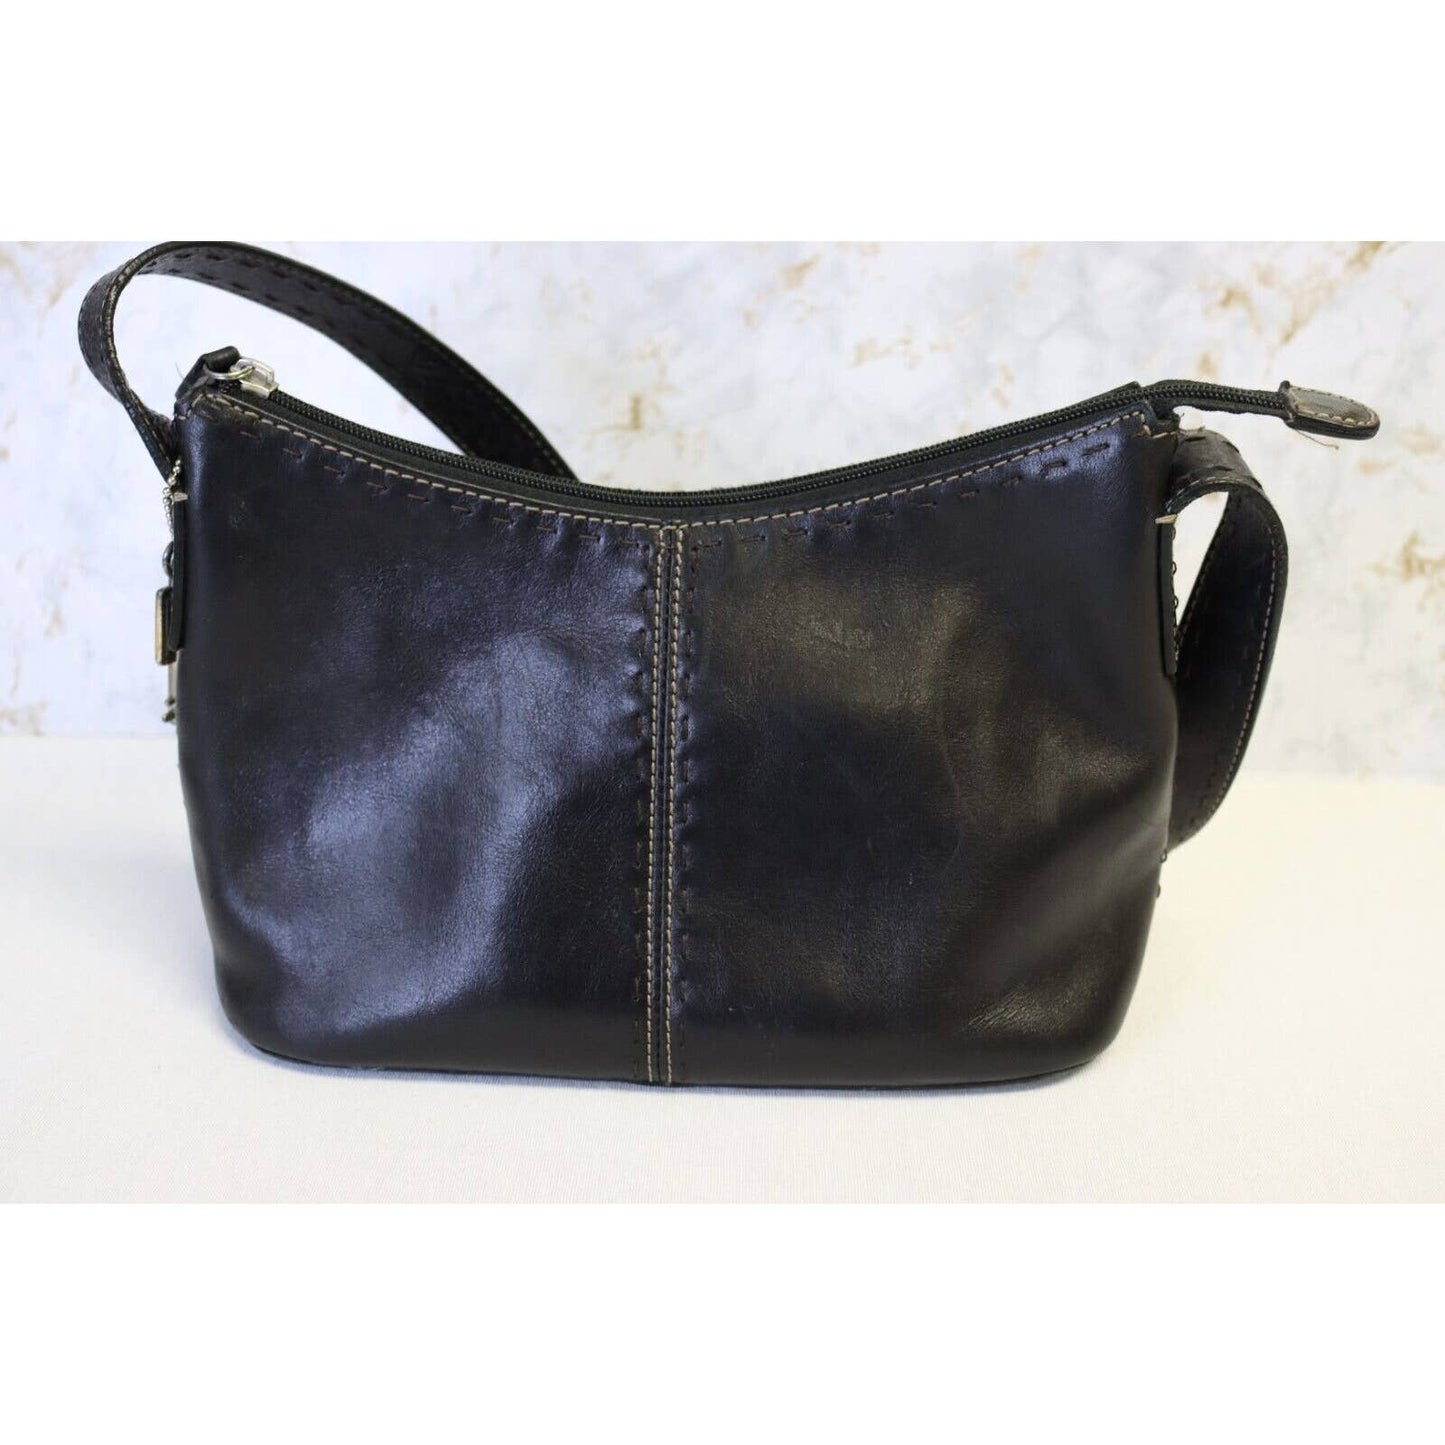 Vintage Fossil Black Leather Handbag